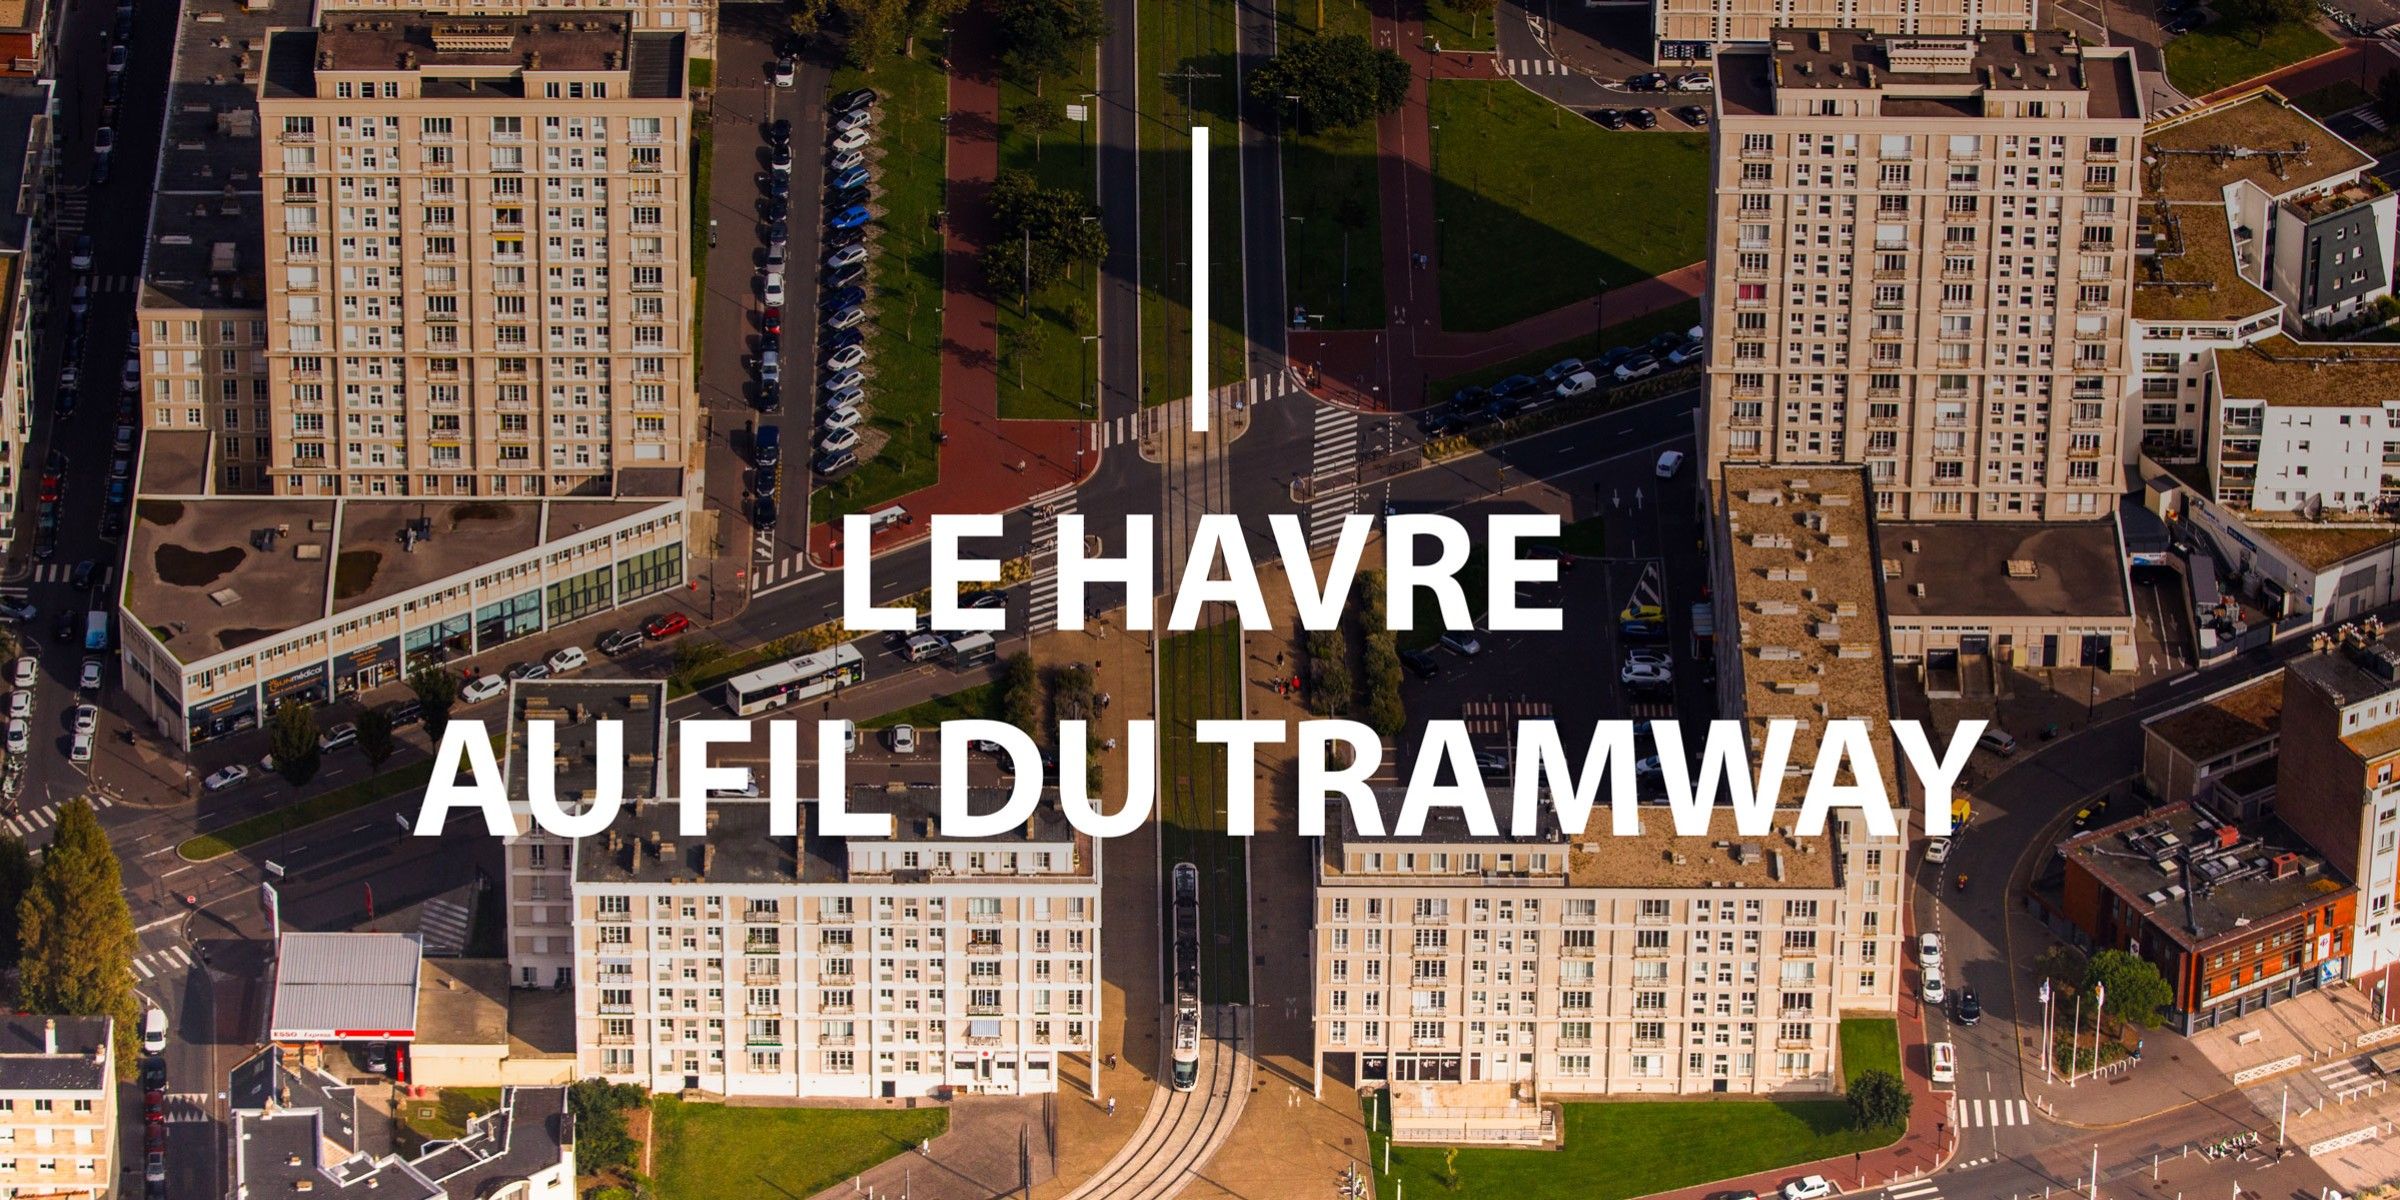 Le Havre au fil du tramway